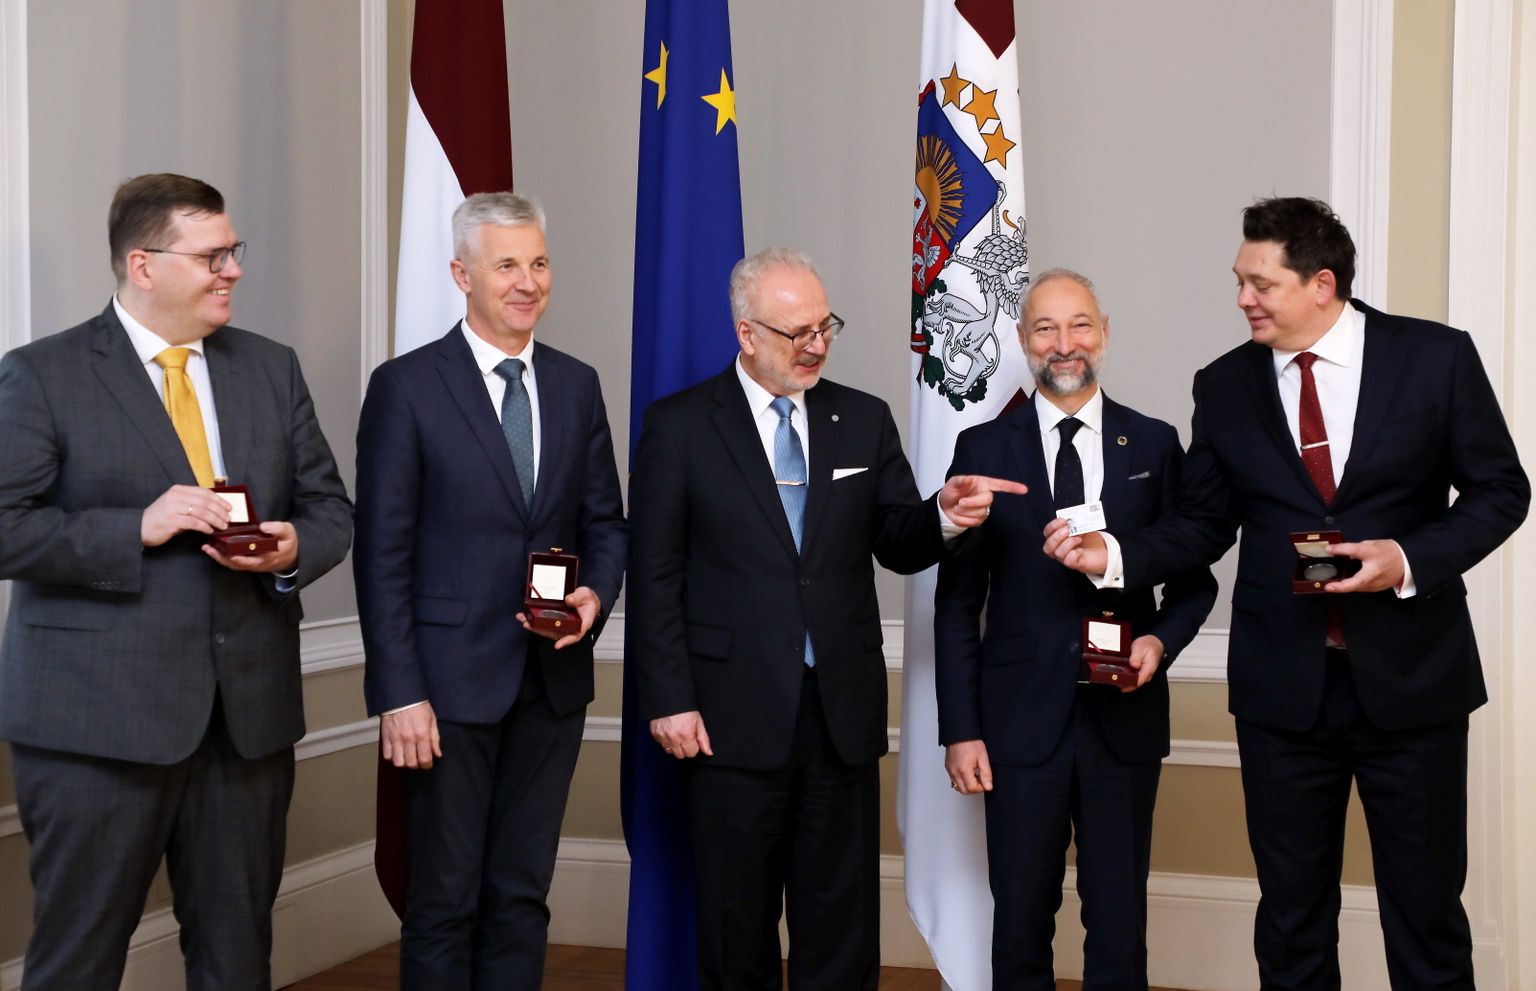 Юрис Пуце (слева), Артис Пабрикс, Эгил Левитс, Янис Борданс и Артус Кайминьш на церемонии награждения медалью президента в Рижском замке